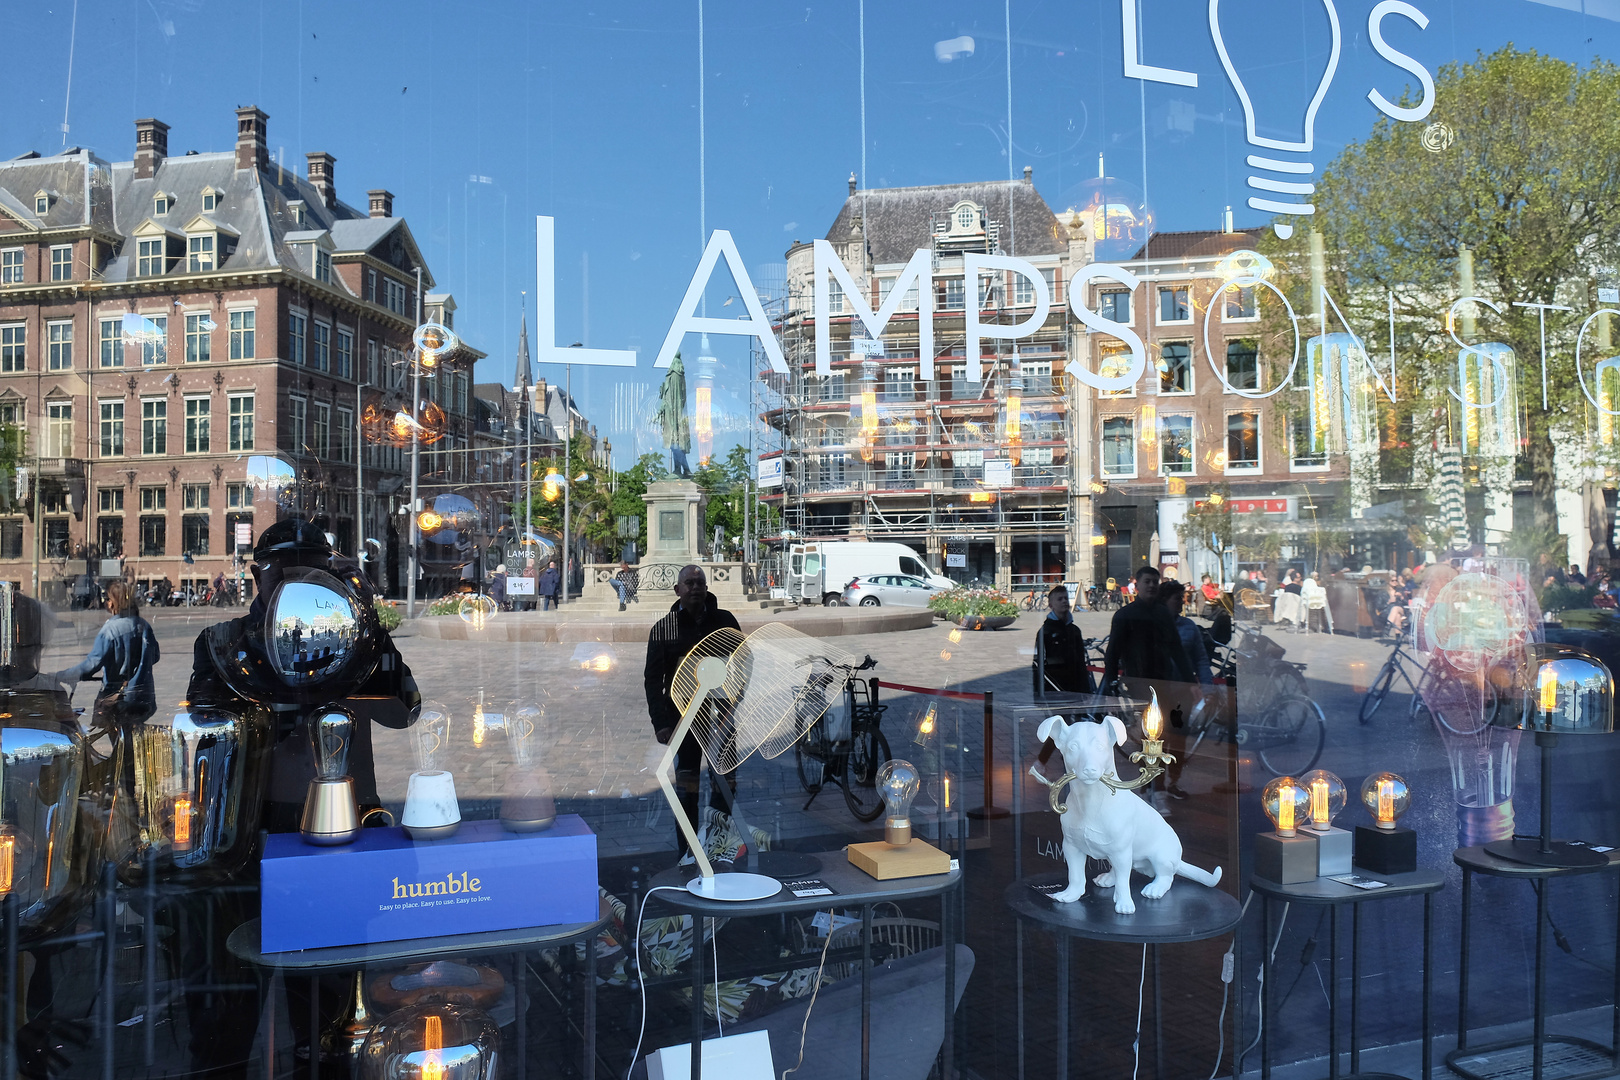 Den Haag: Lamps